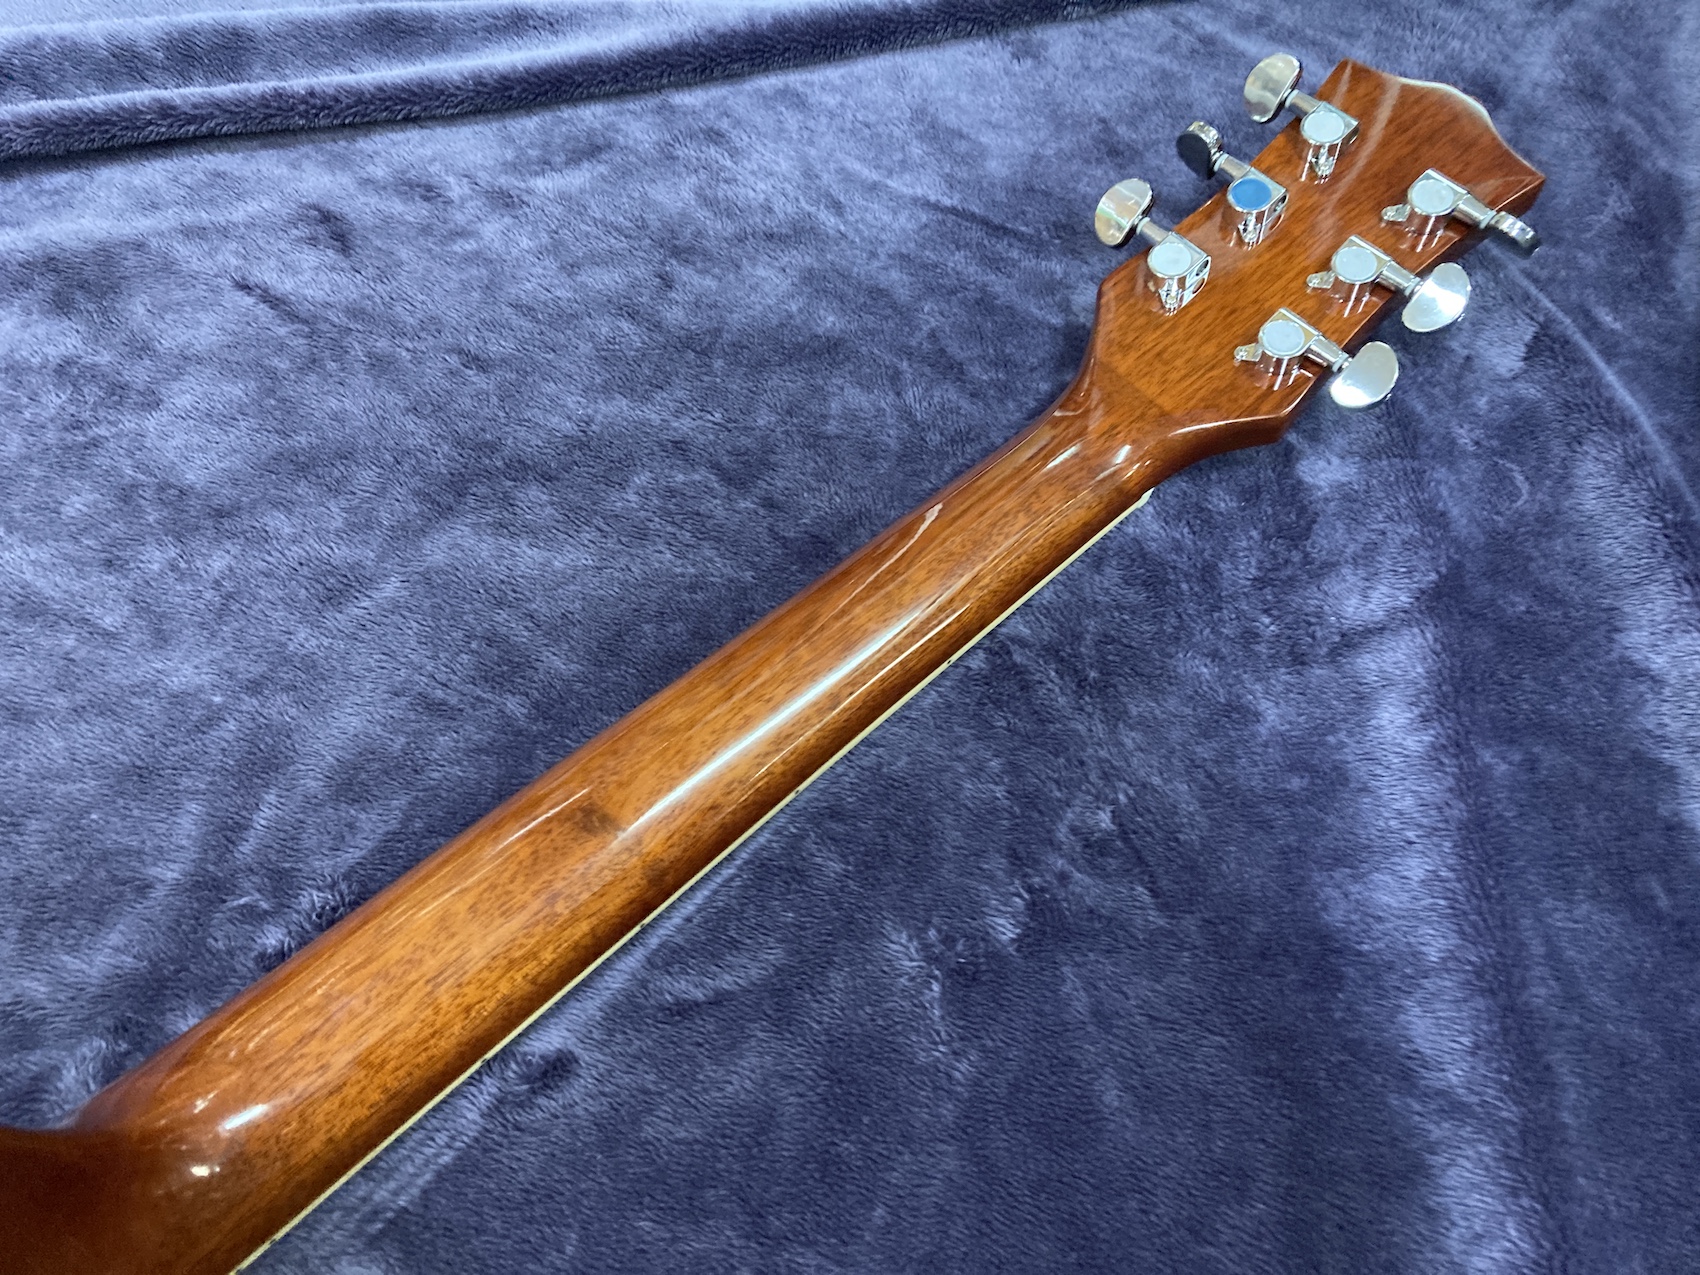 アコギ アコースティックギター Acoustic Guitar Smiger Smaile Singer 楽器 音楽 機材 Music 弦 木 木材 かっこいい 調整済み Meguiars Com Do